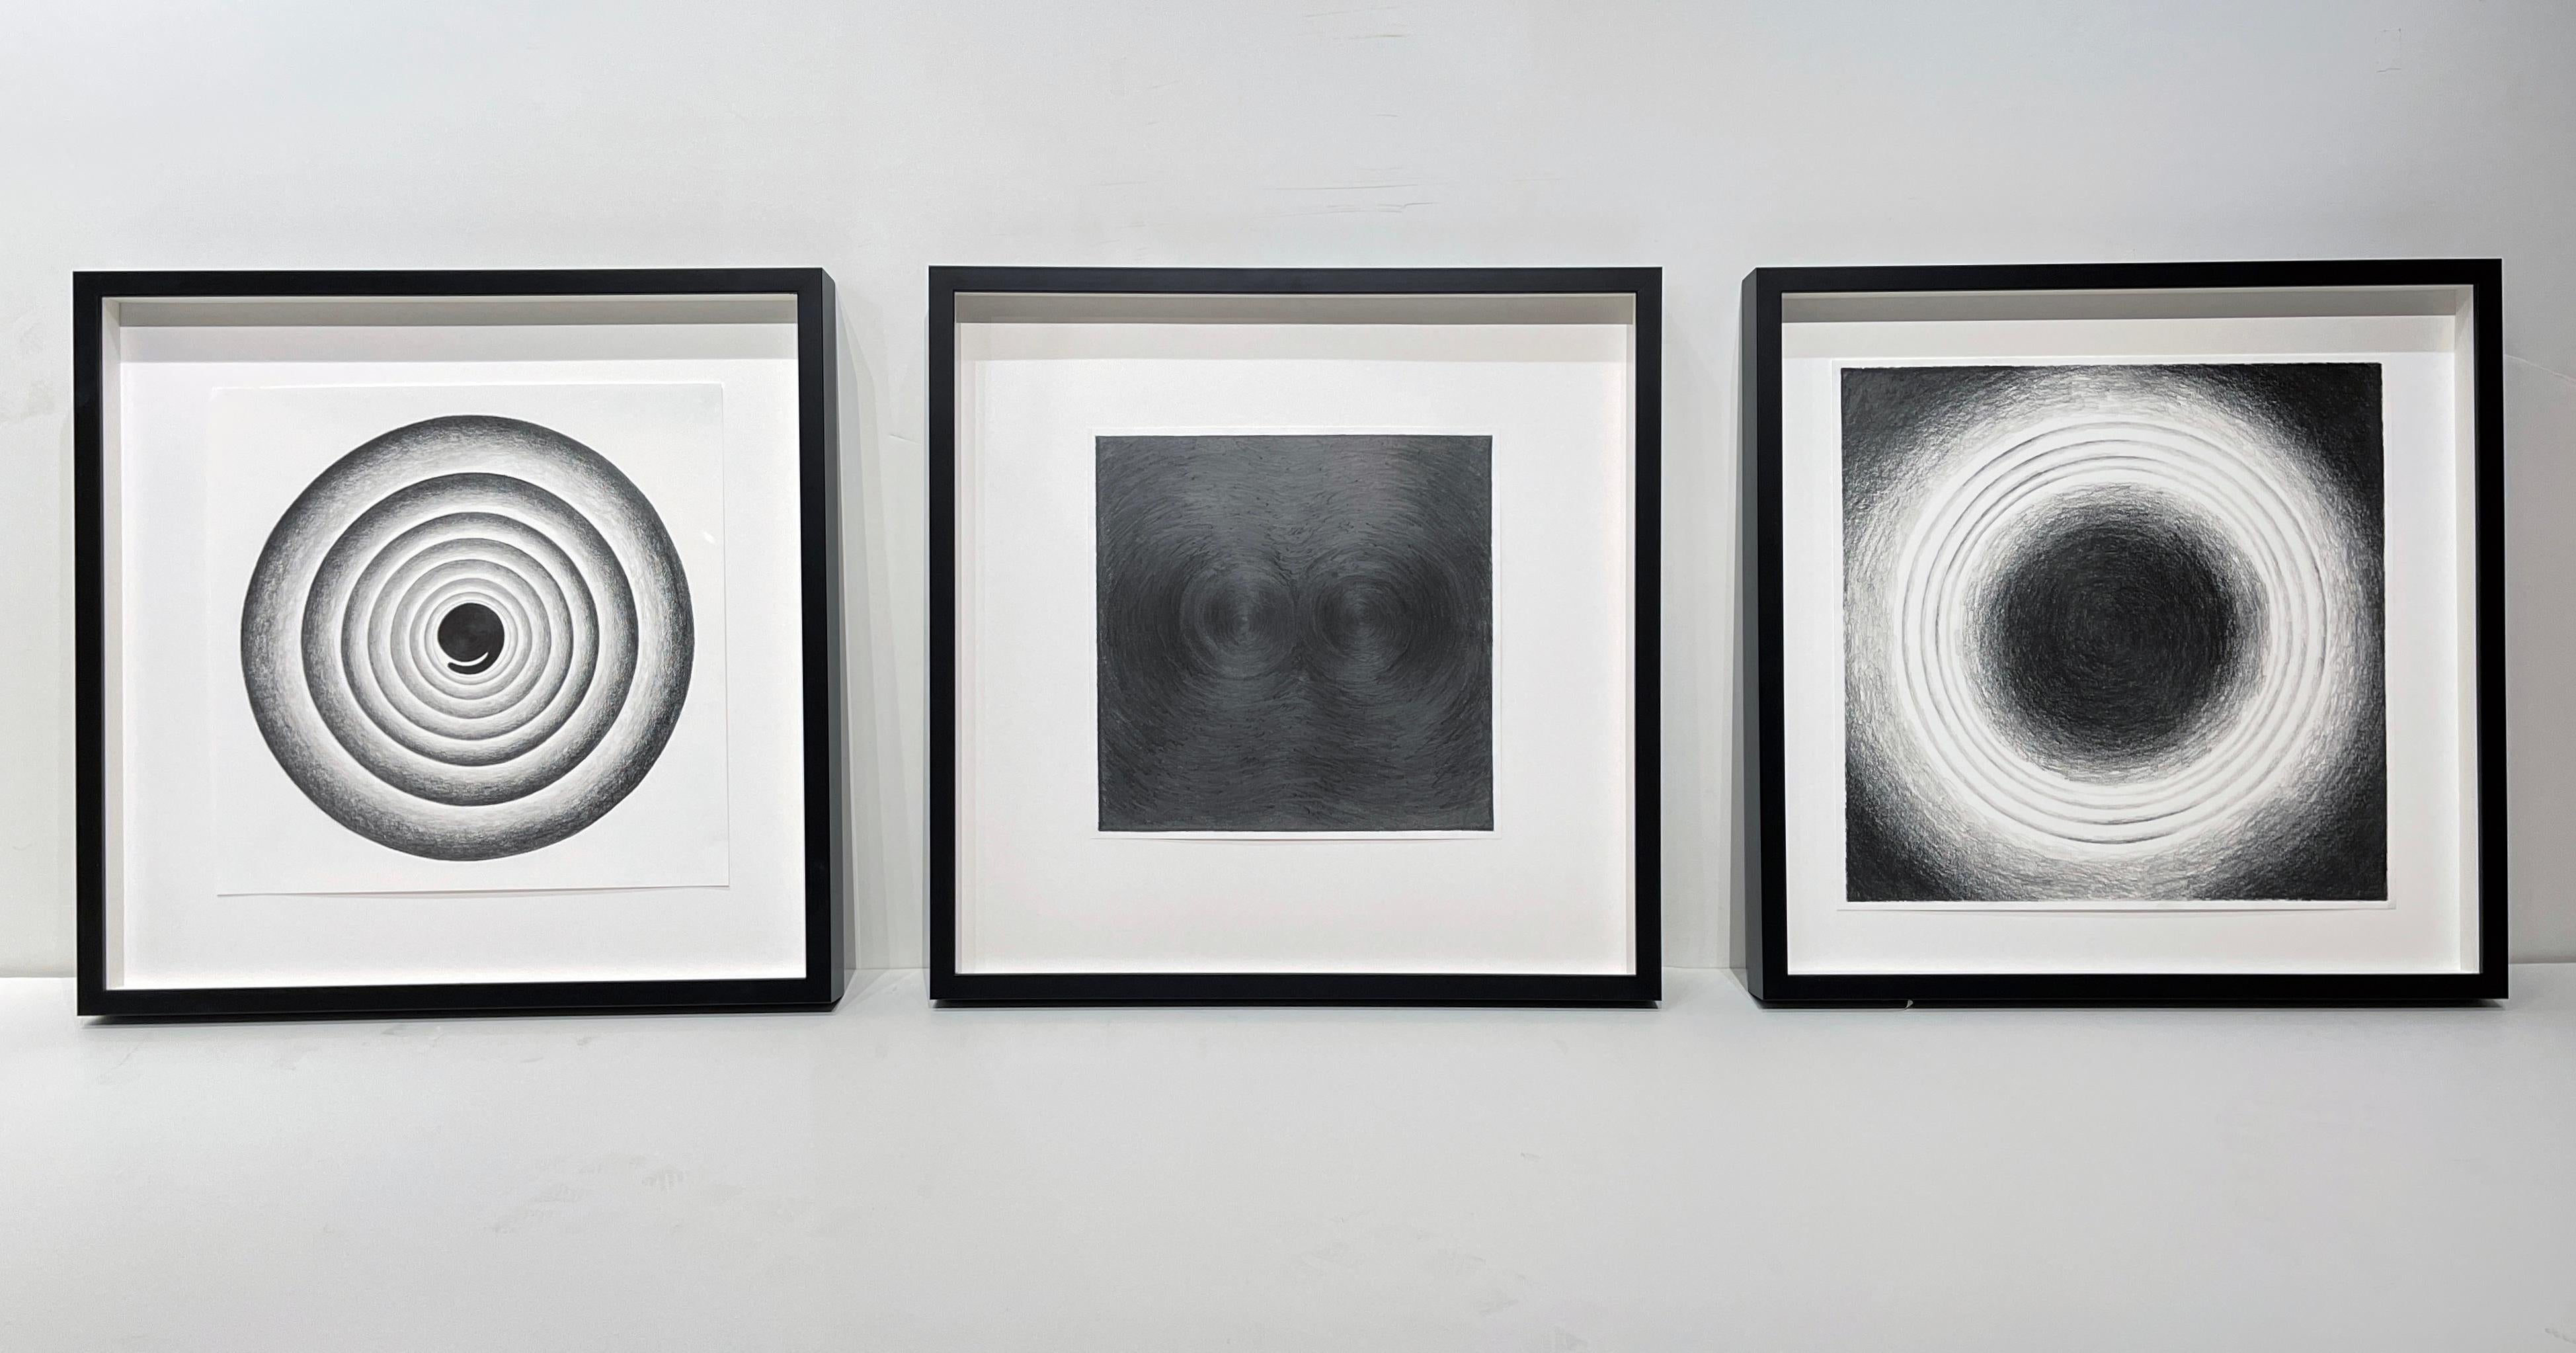 Ensemble de trois abstractions circulaires géométriques , graphite sur papier, encadré - Art de Joe Royer